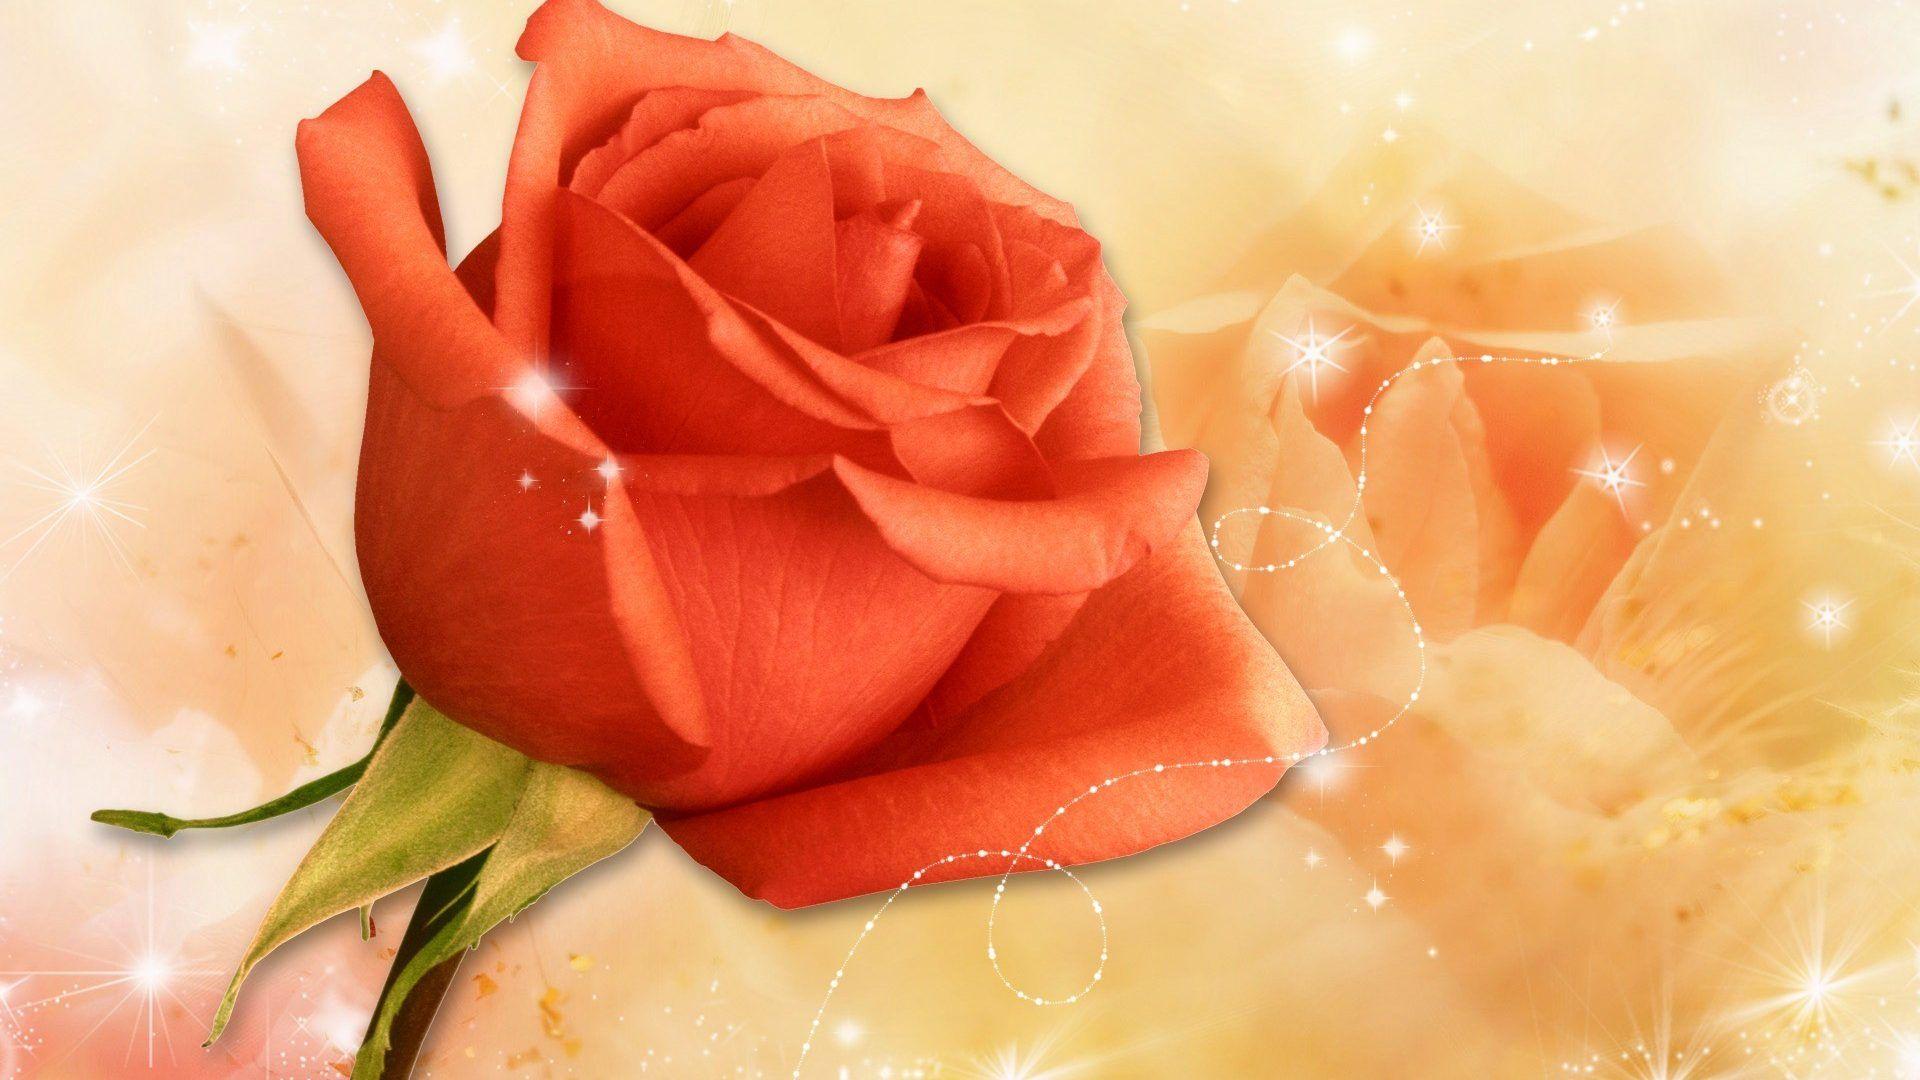 EEBB77 Color wallpaper: Orange Roses Beautiful Nature Flowers Rose